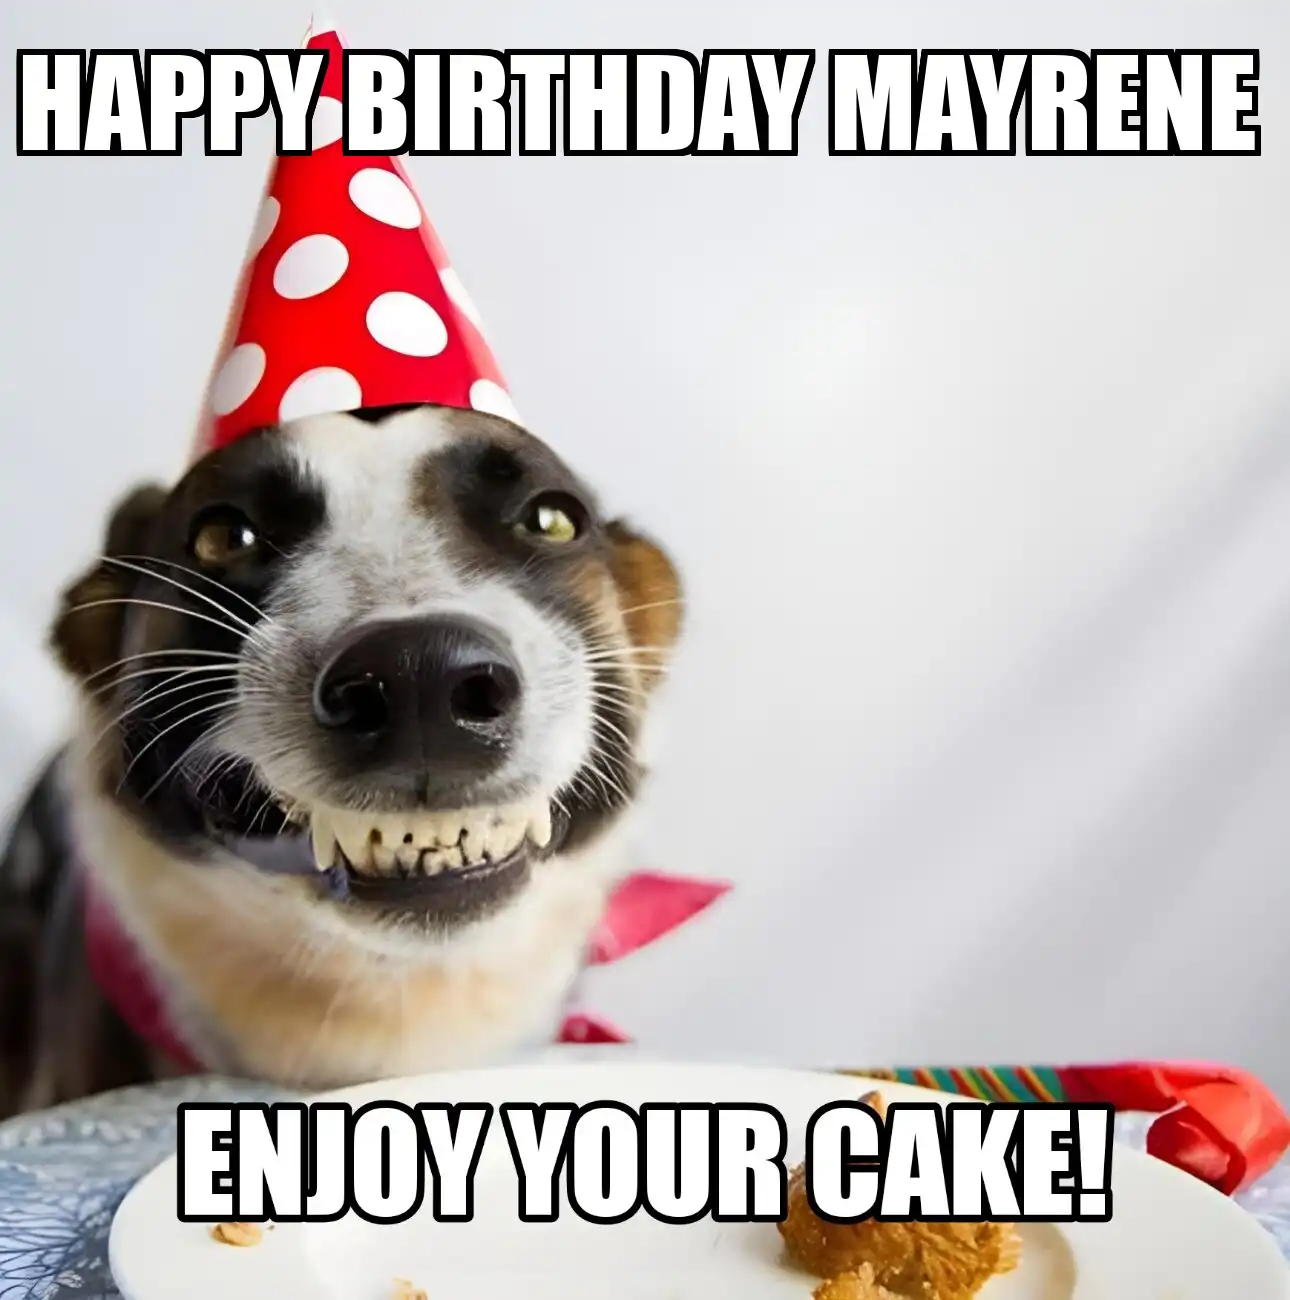 Happy Birthday Mayrene Enjoy Your Cake Dog Meme